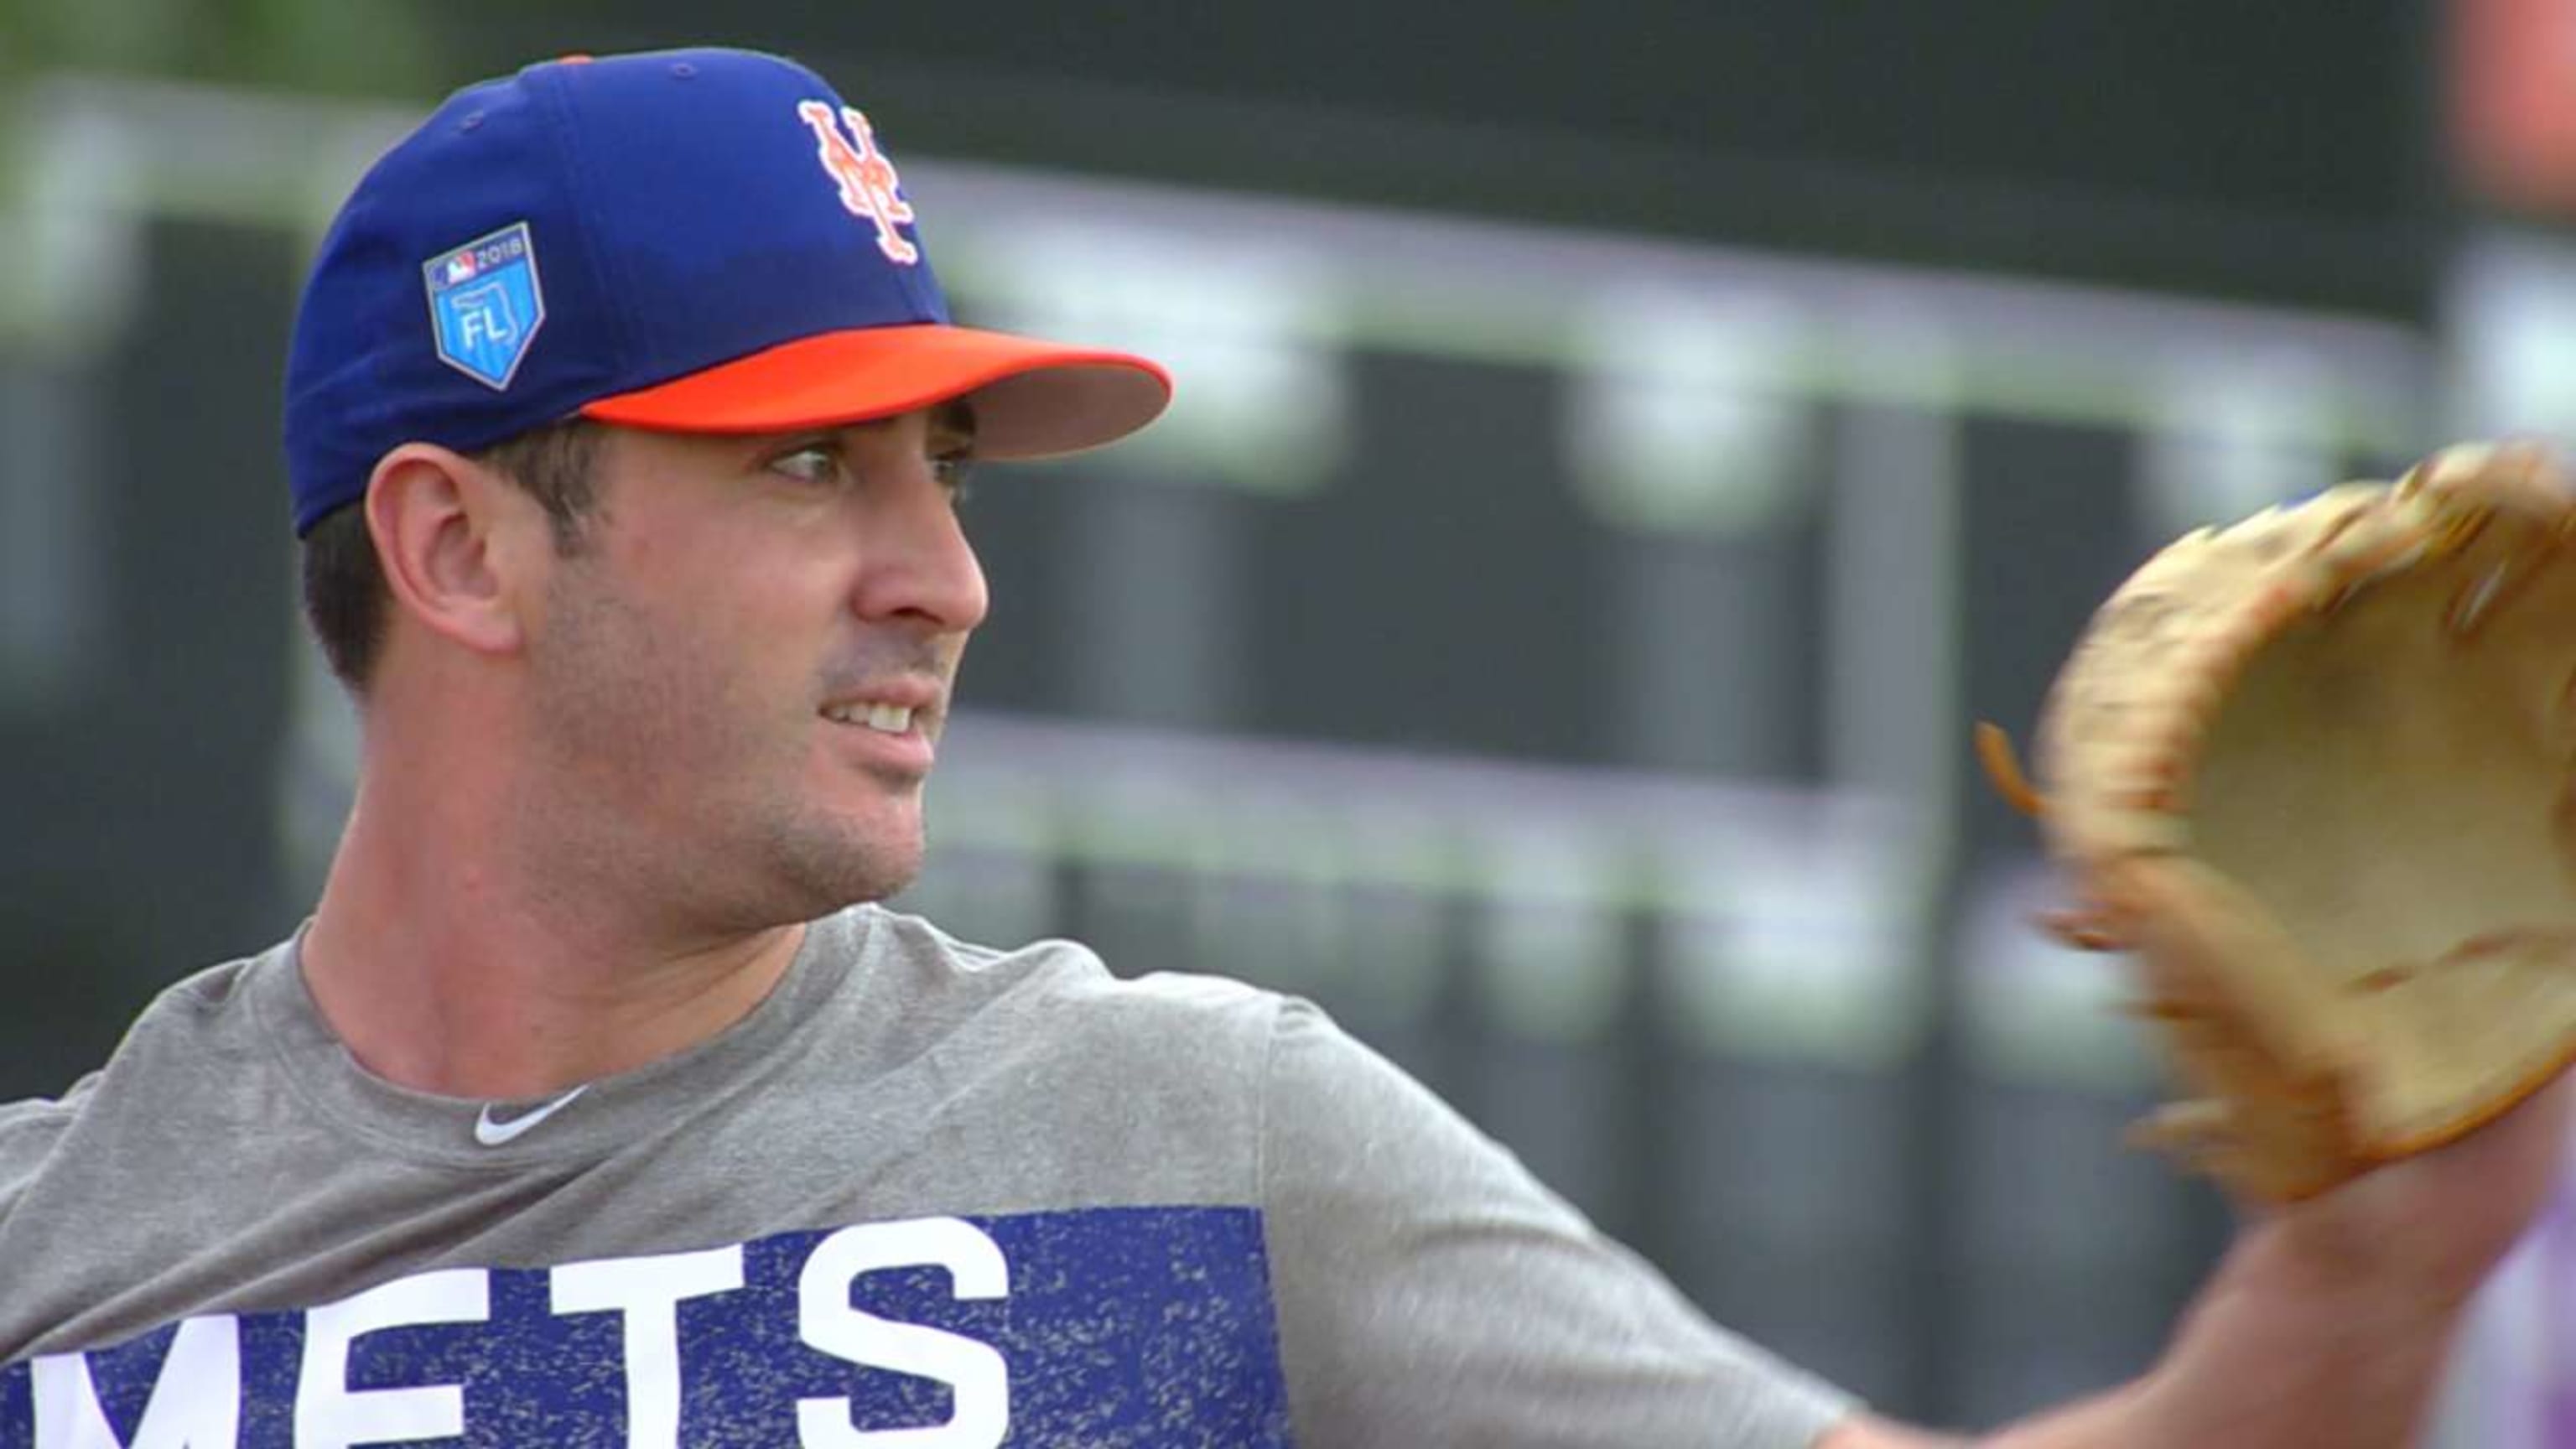 Mets, Yankees spring training visit brings optimism for 2018